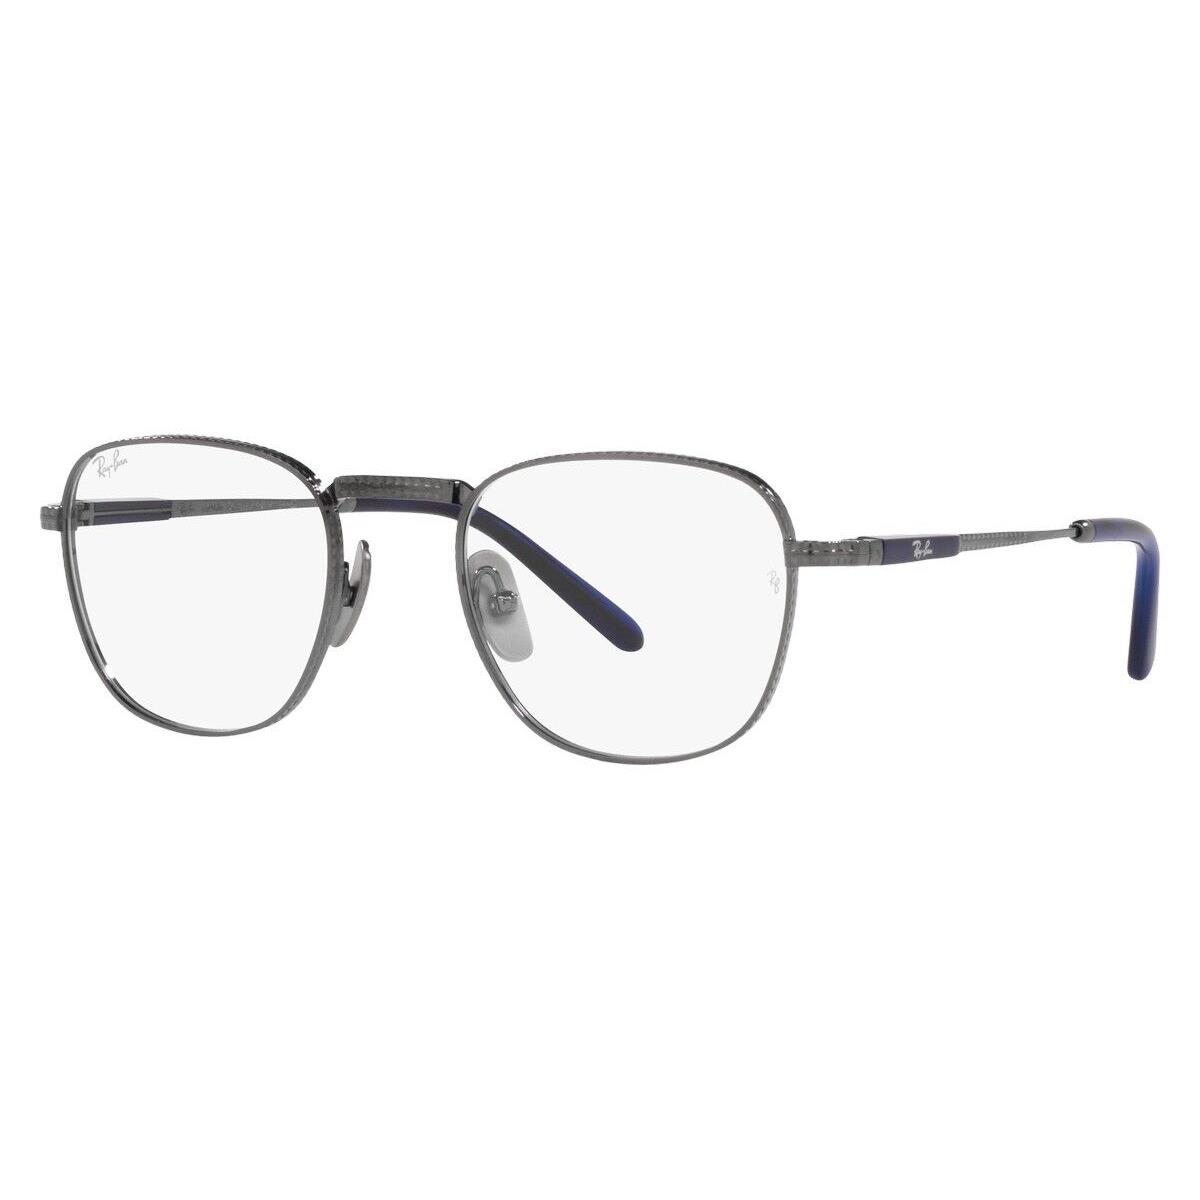 Ray-ban Frank Titanium RX8258V Eyeglasses RX Unisex Square 48mm - Frame: Gunmetal, Lens: Demo